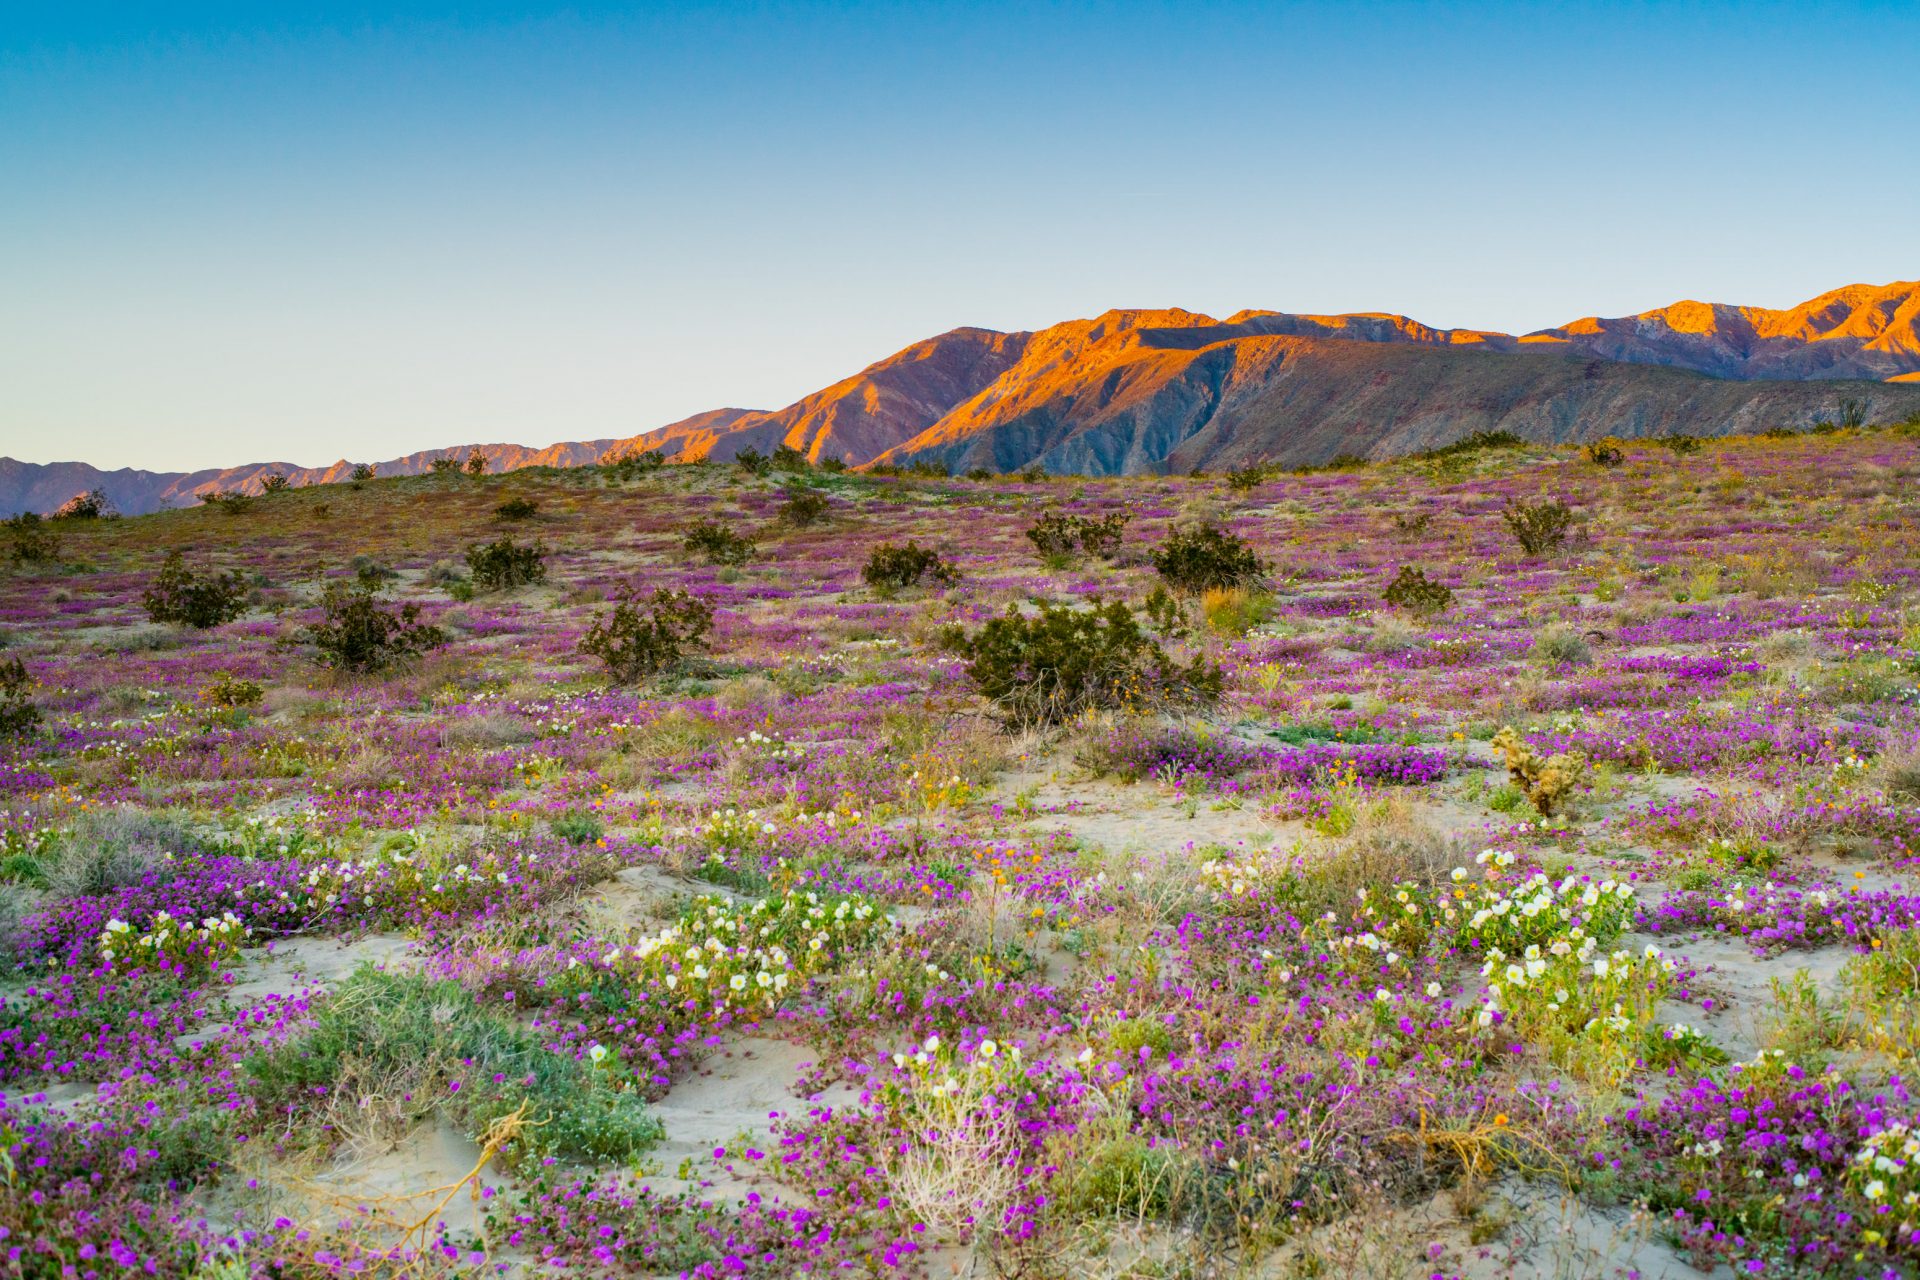 Wildflowers in California's superbloom